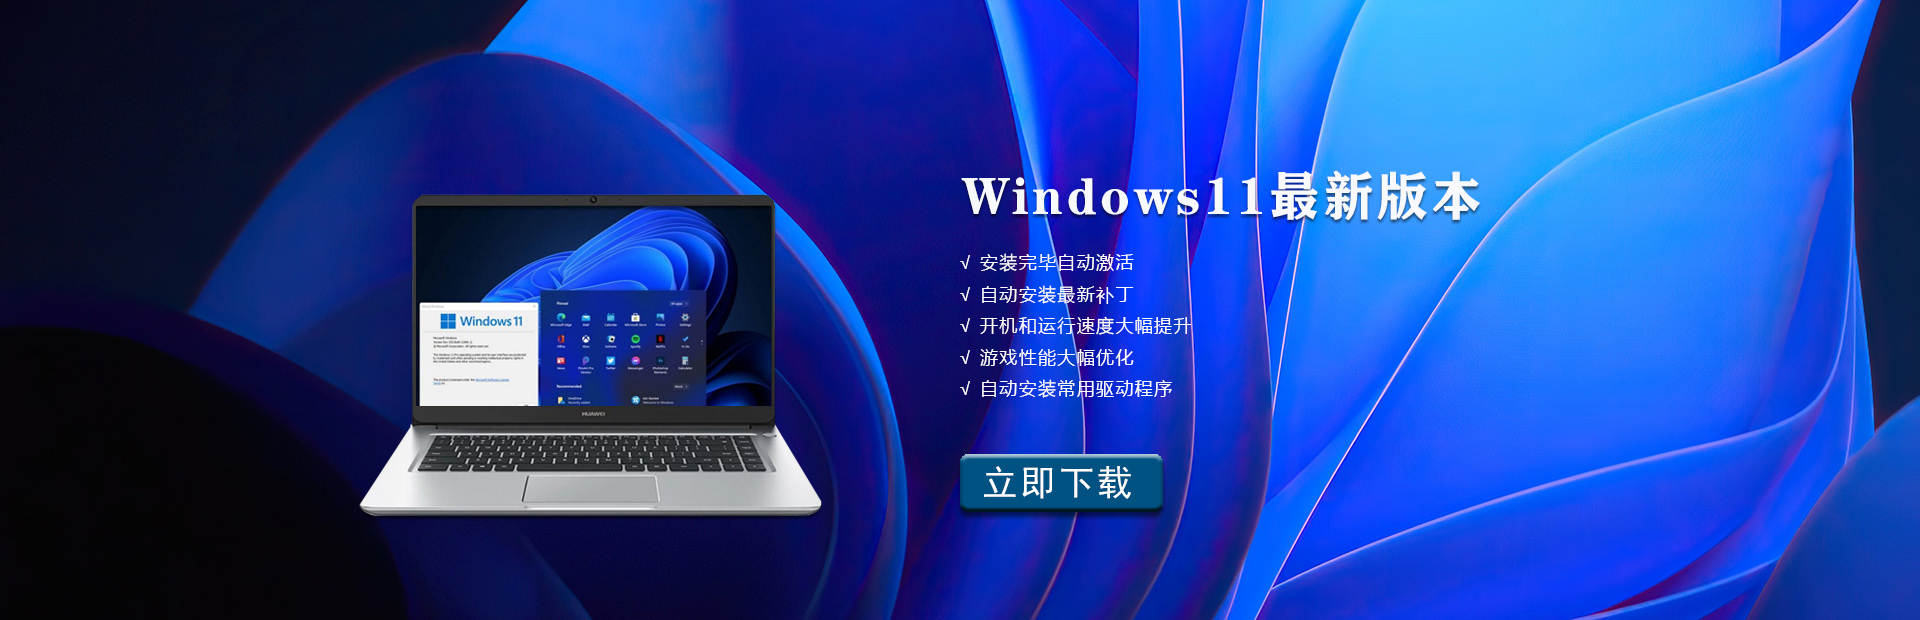 Windows11最新版本